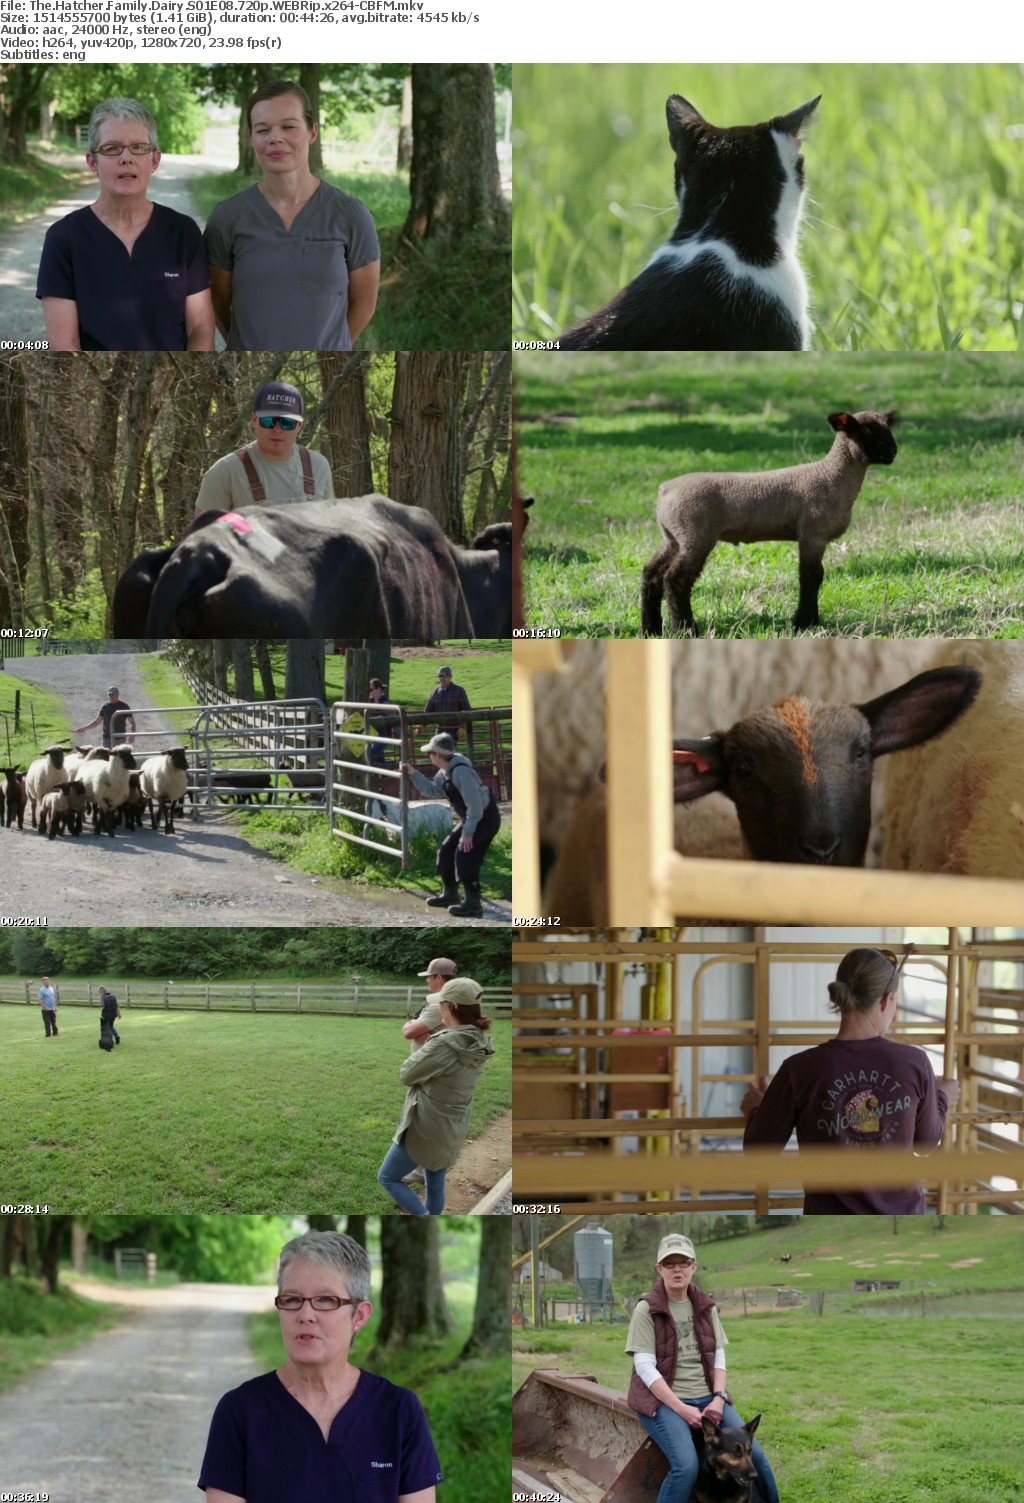 The Hatcher Family Dairy S01E08 720p WEBRip x264-CBFM